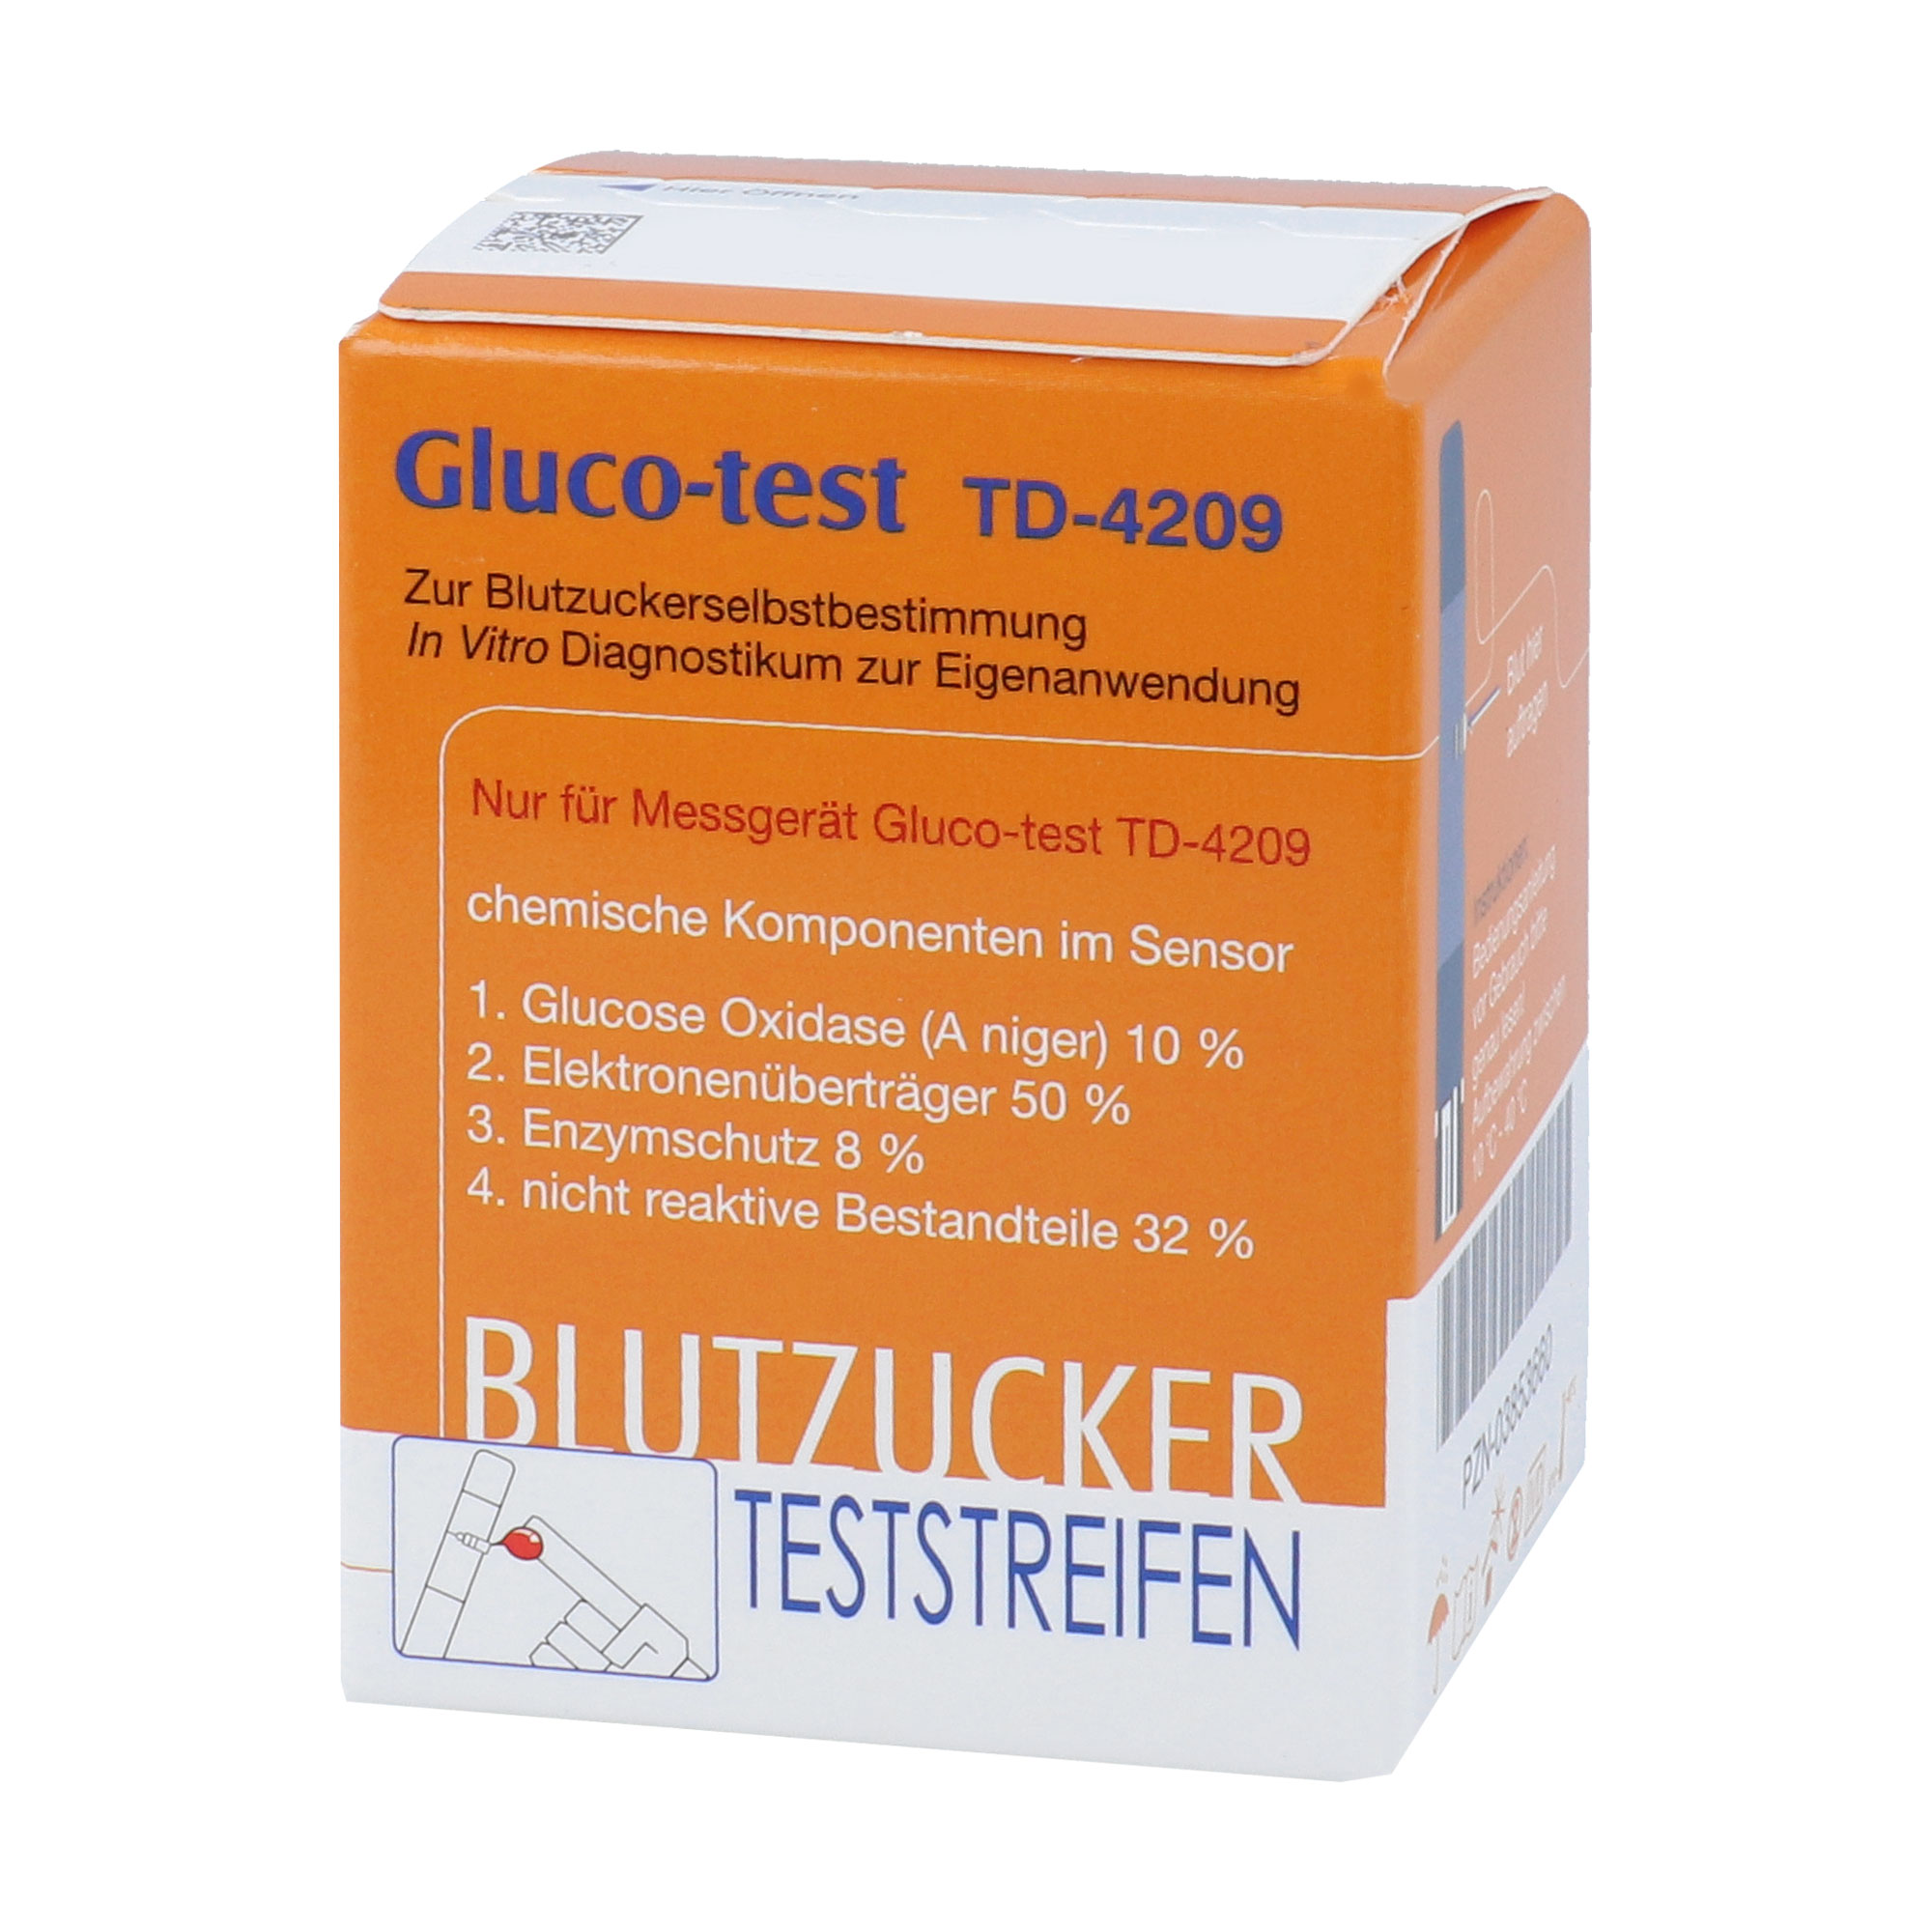 Für Gluco-test TD-4209.